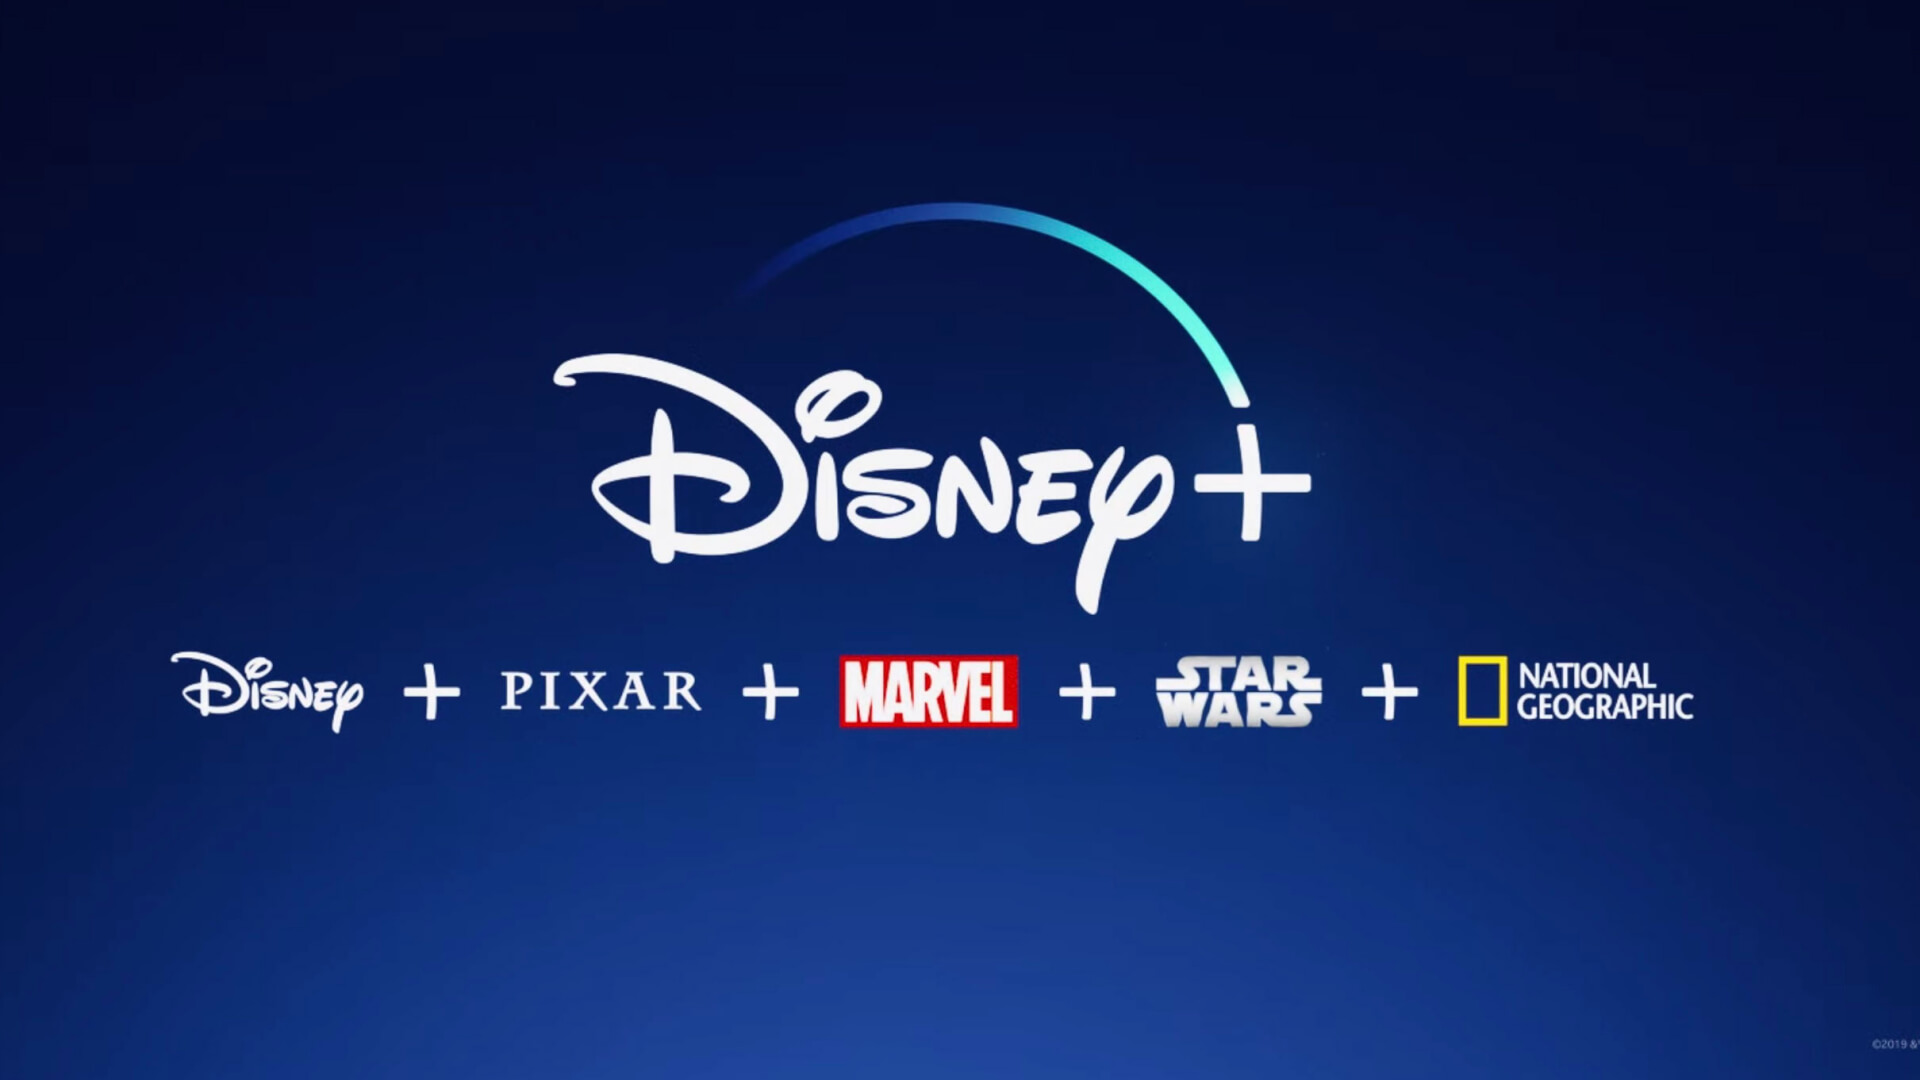 Az indulás óta csaknem 29 millió feliratkozóra tett szert a Disney+